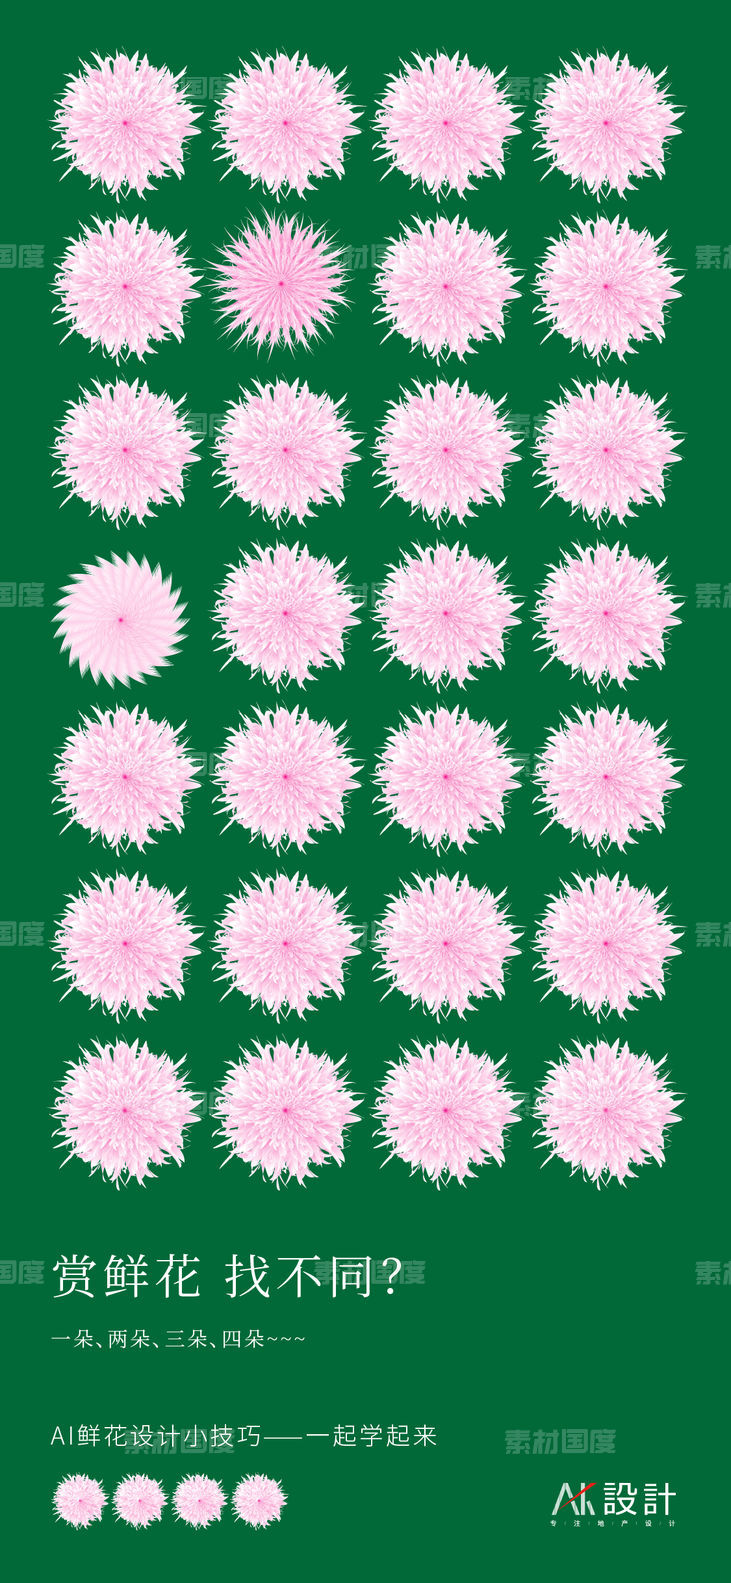 AI鲜花设计找不同海报